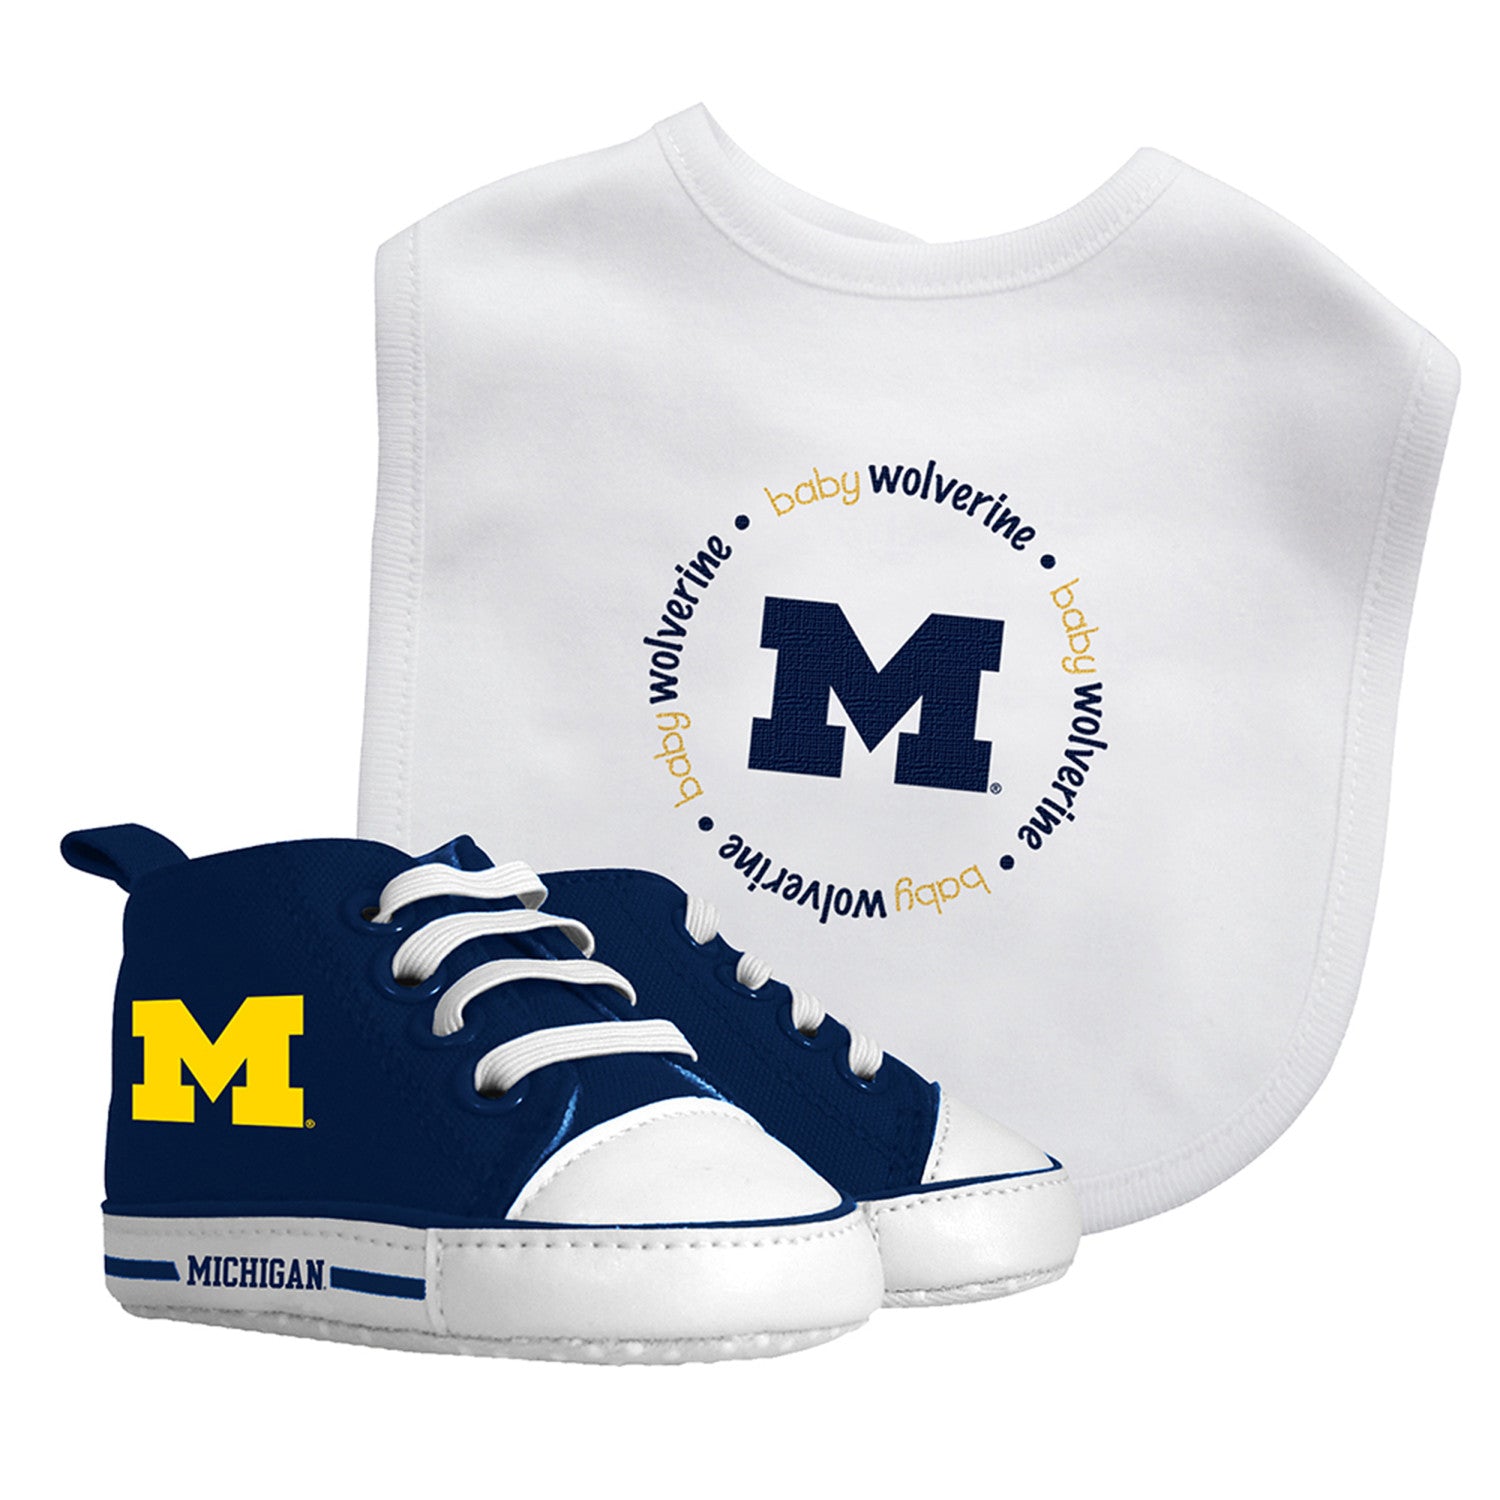 Michigan Wolverines - 2-Piece Baby Gift Set